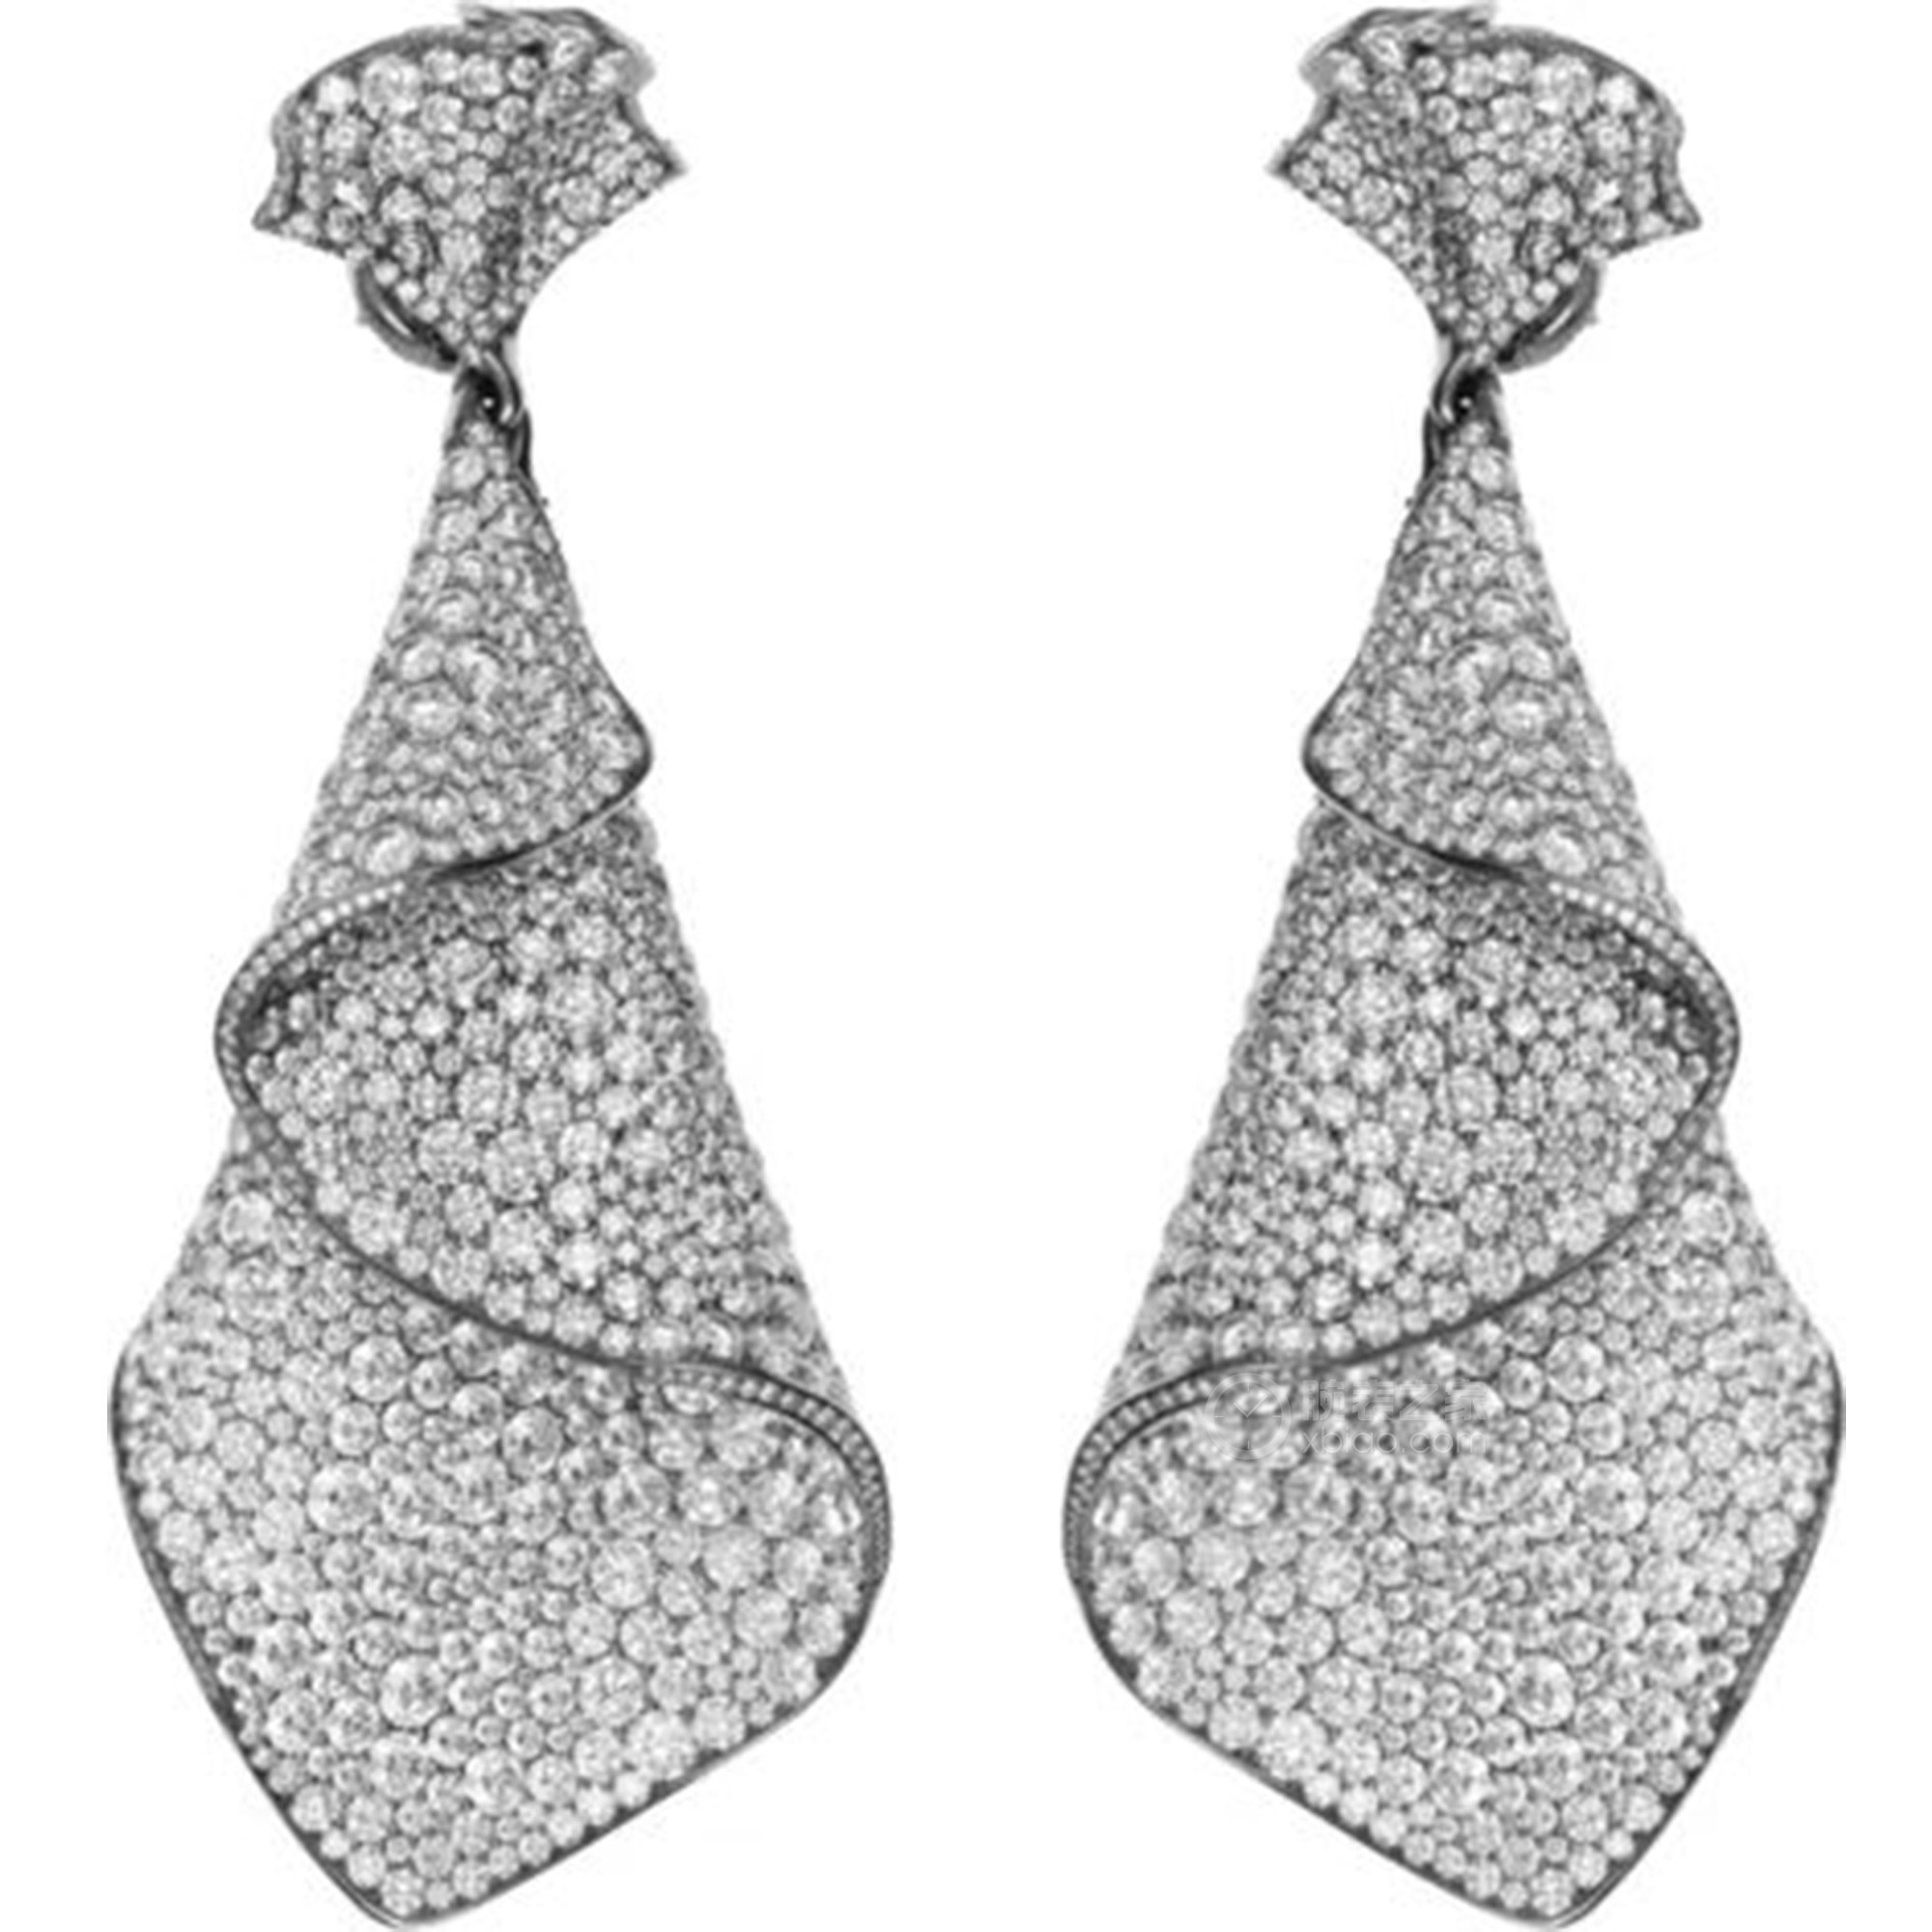 萧邦高级珠宝系列钛金属耳环耳饰